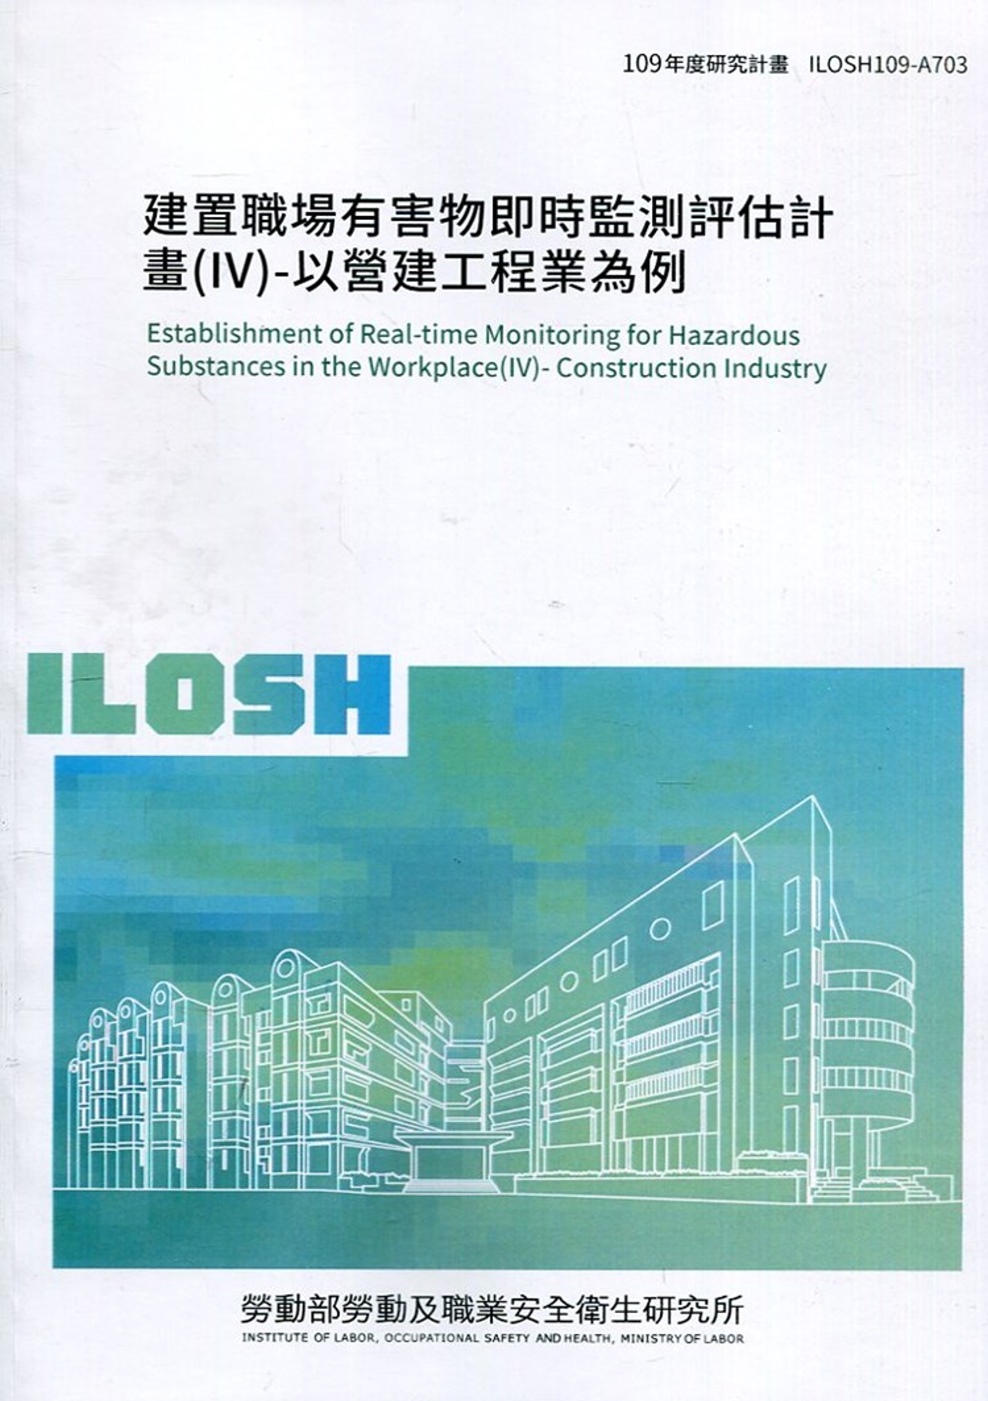 建置職場有害物即時監測評估計畫(IV)-以營建工程業為例 ILOSH109-A703